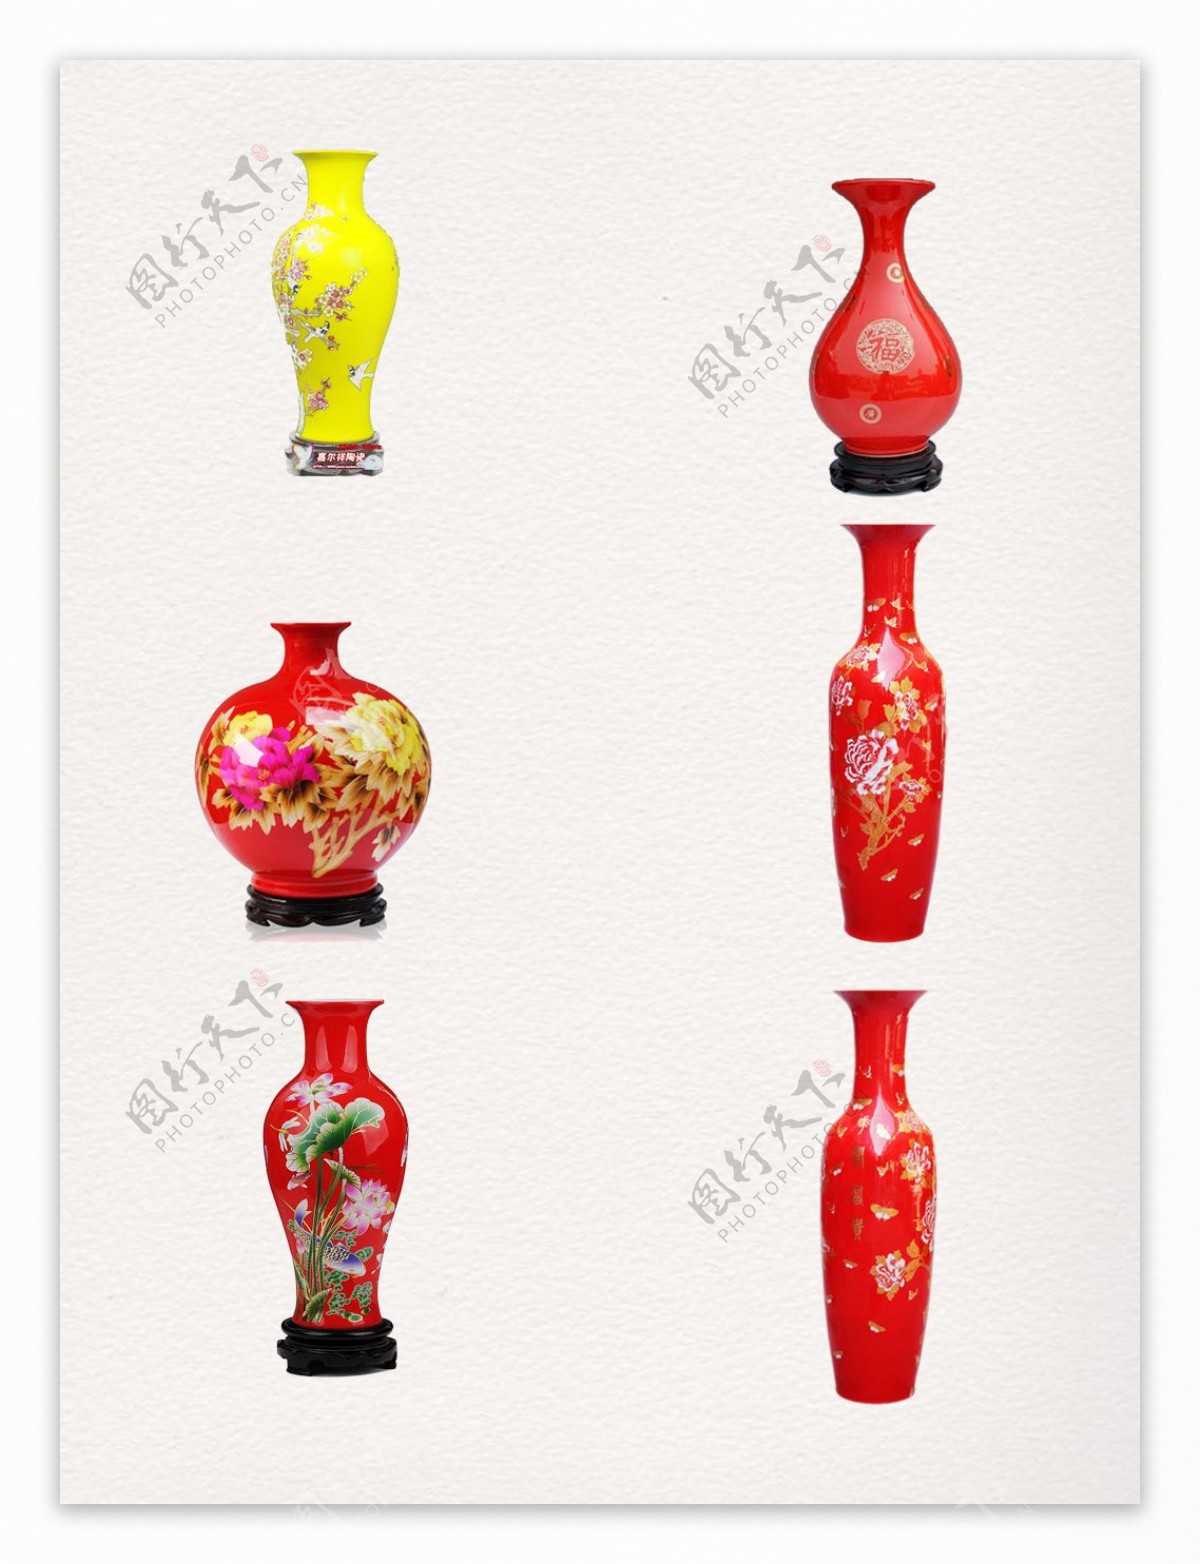 一组高贵宫廷使用的红色花瓶